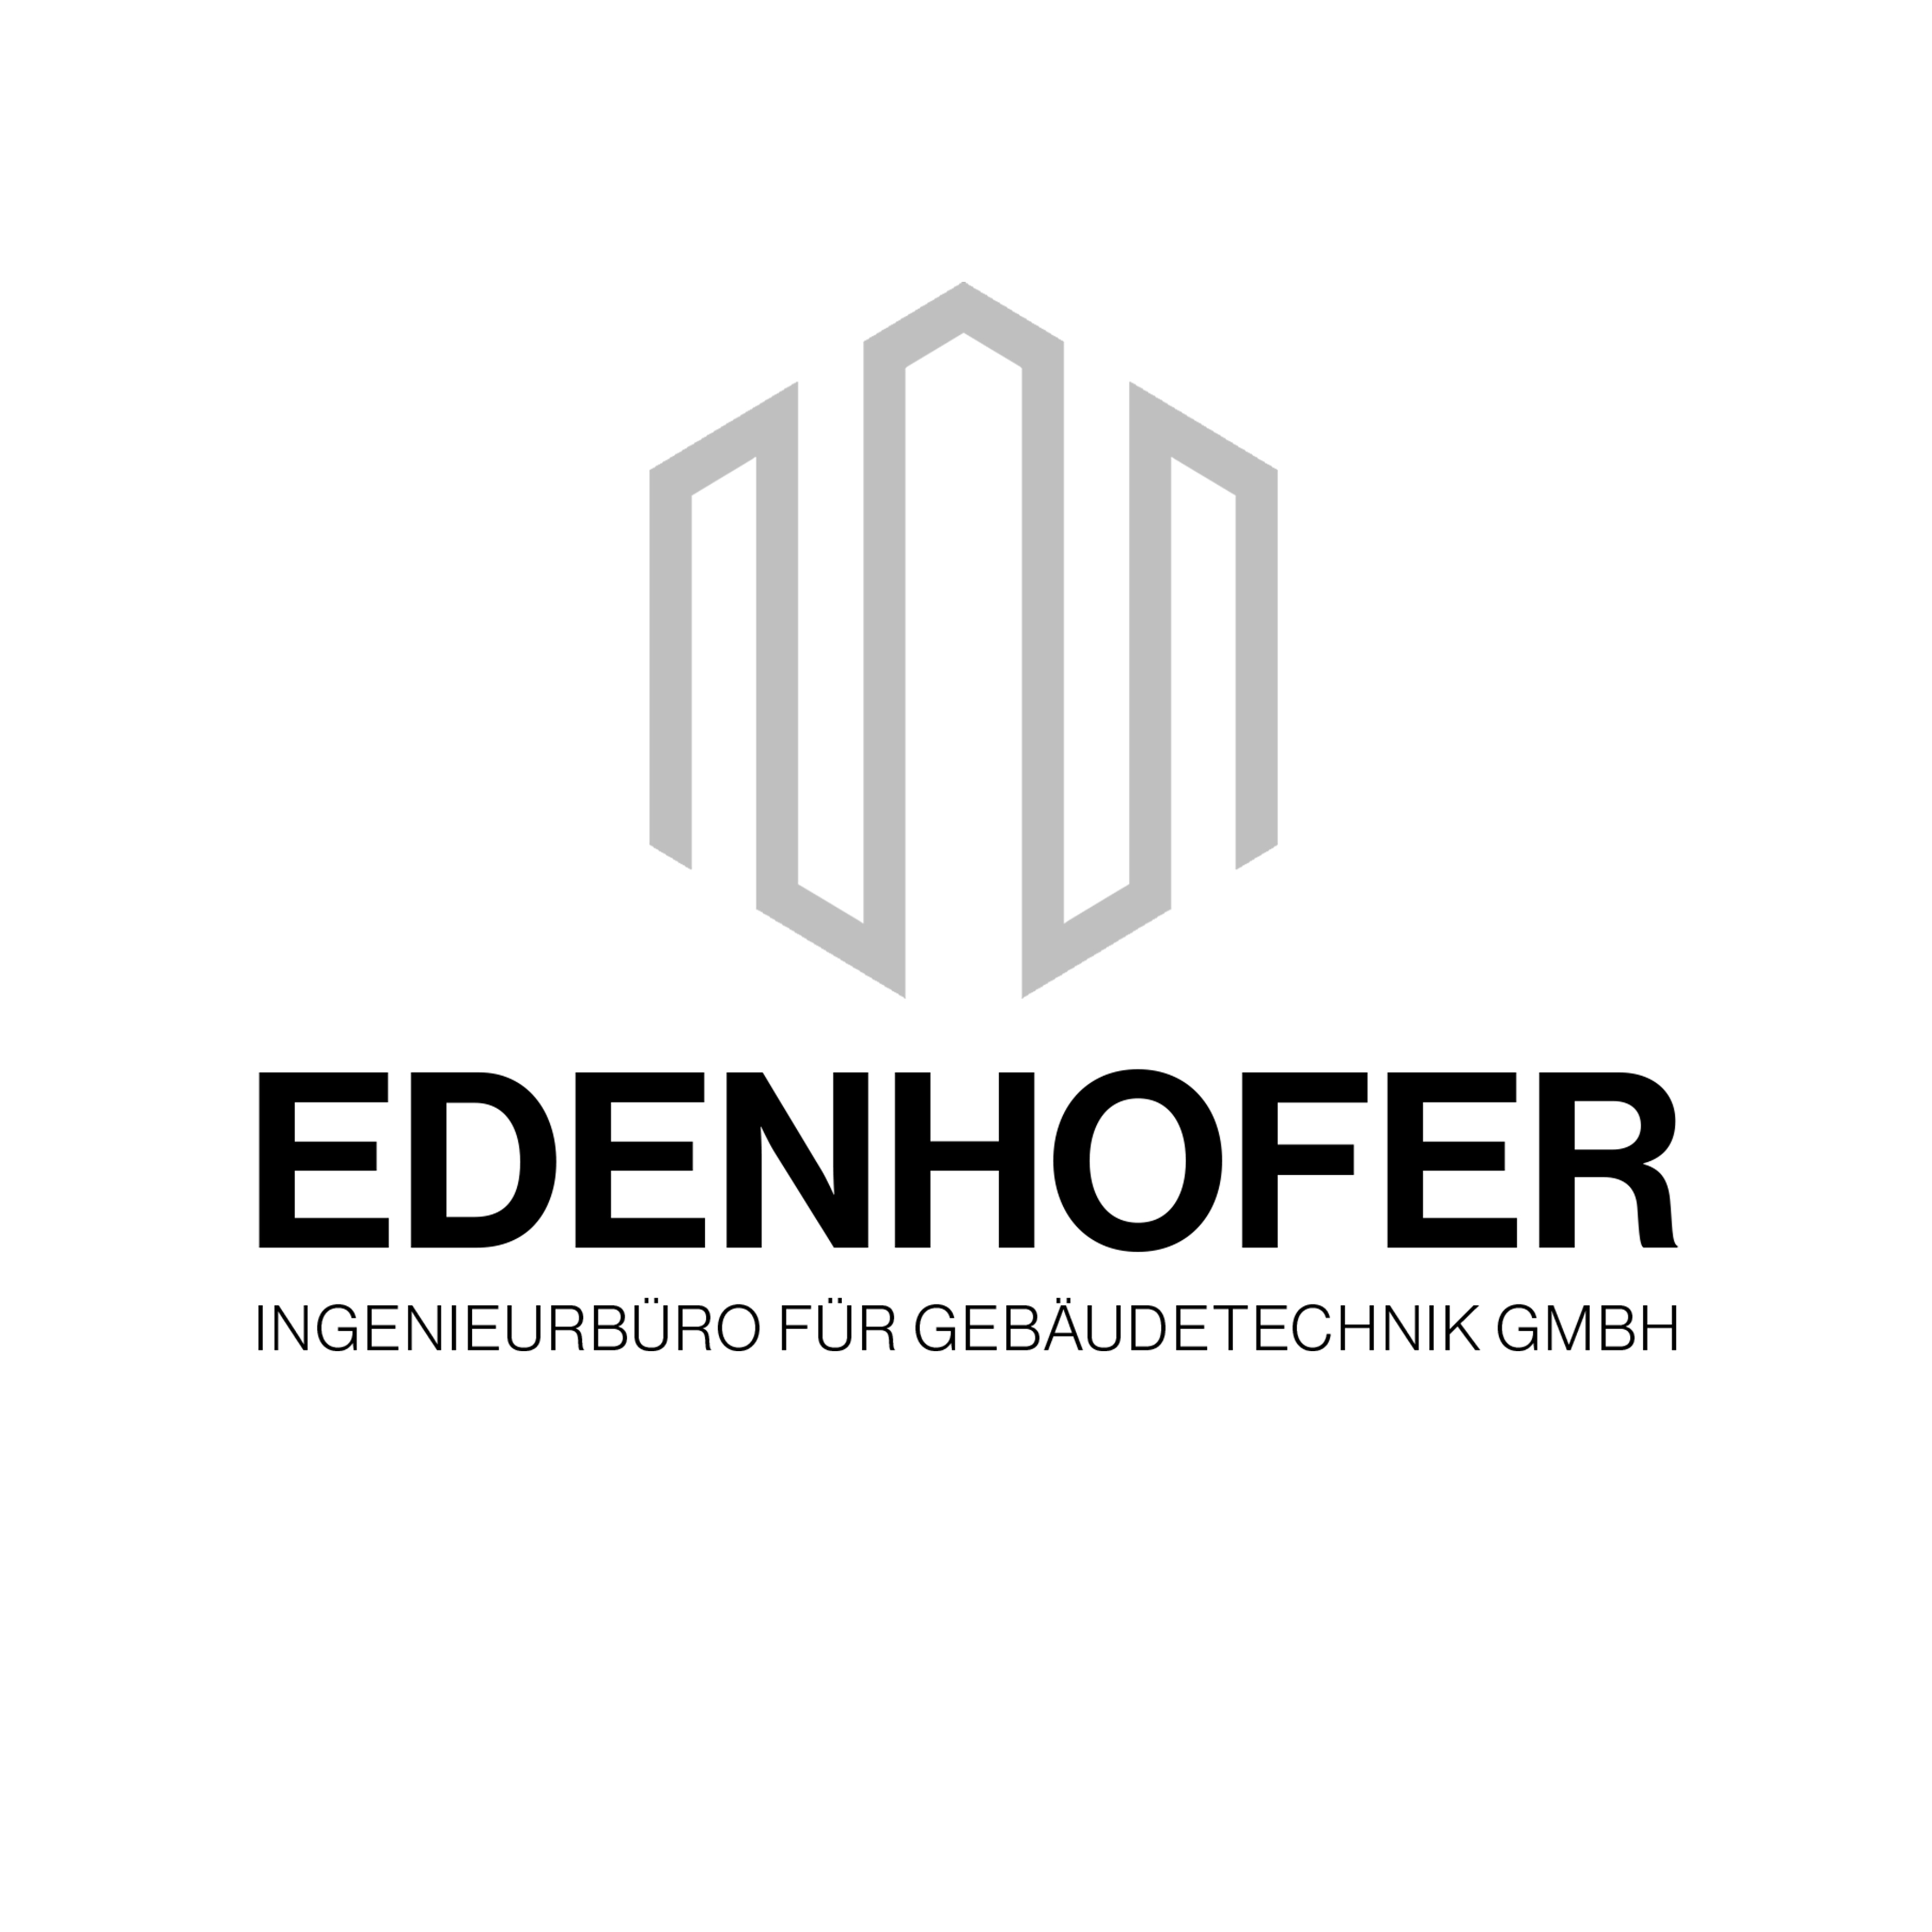 Edenhofer Ingenieurbüro für Gebäudetechnik GmbH